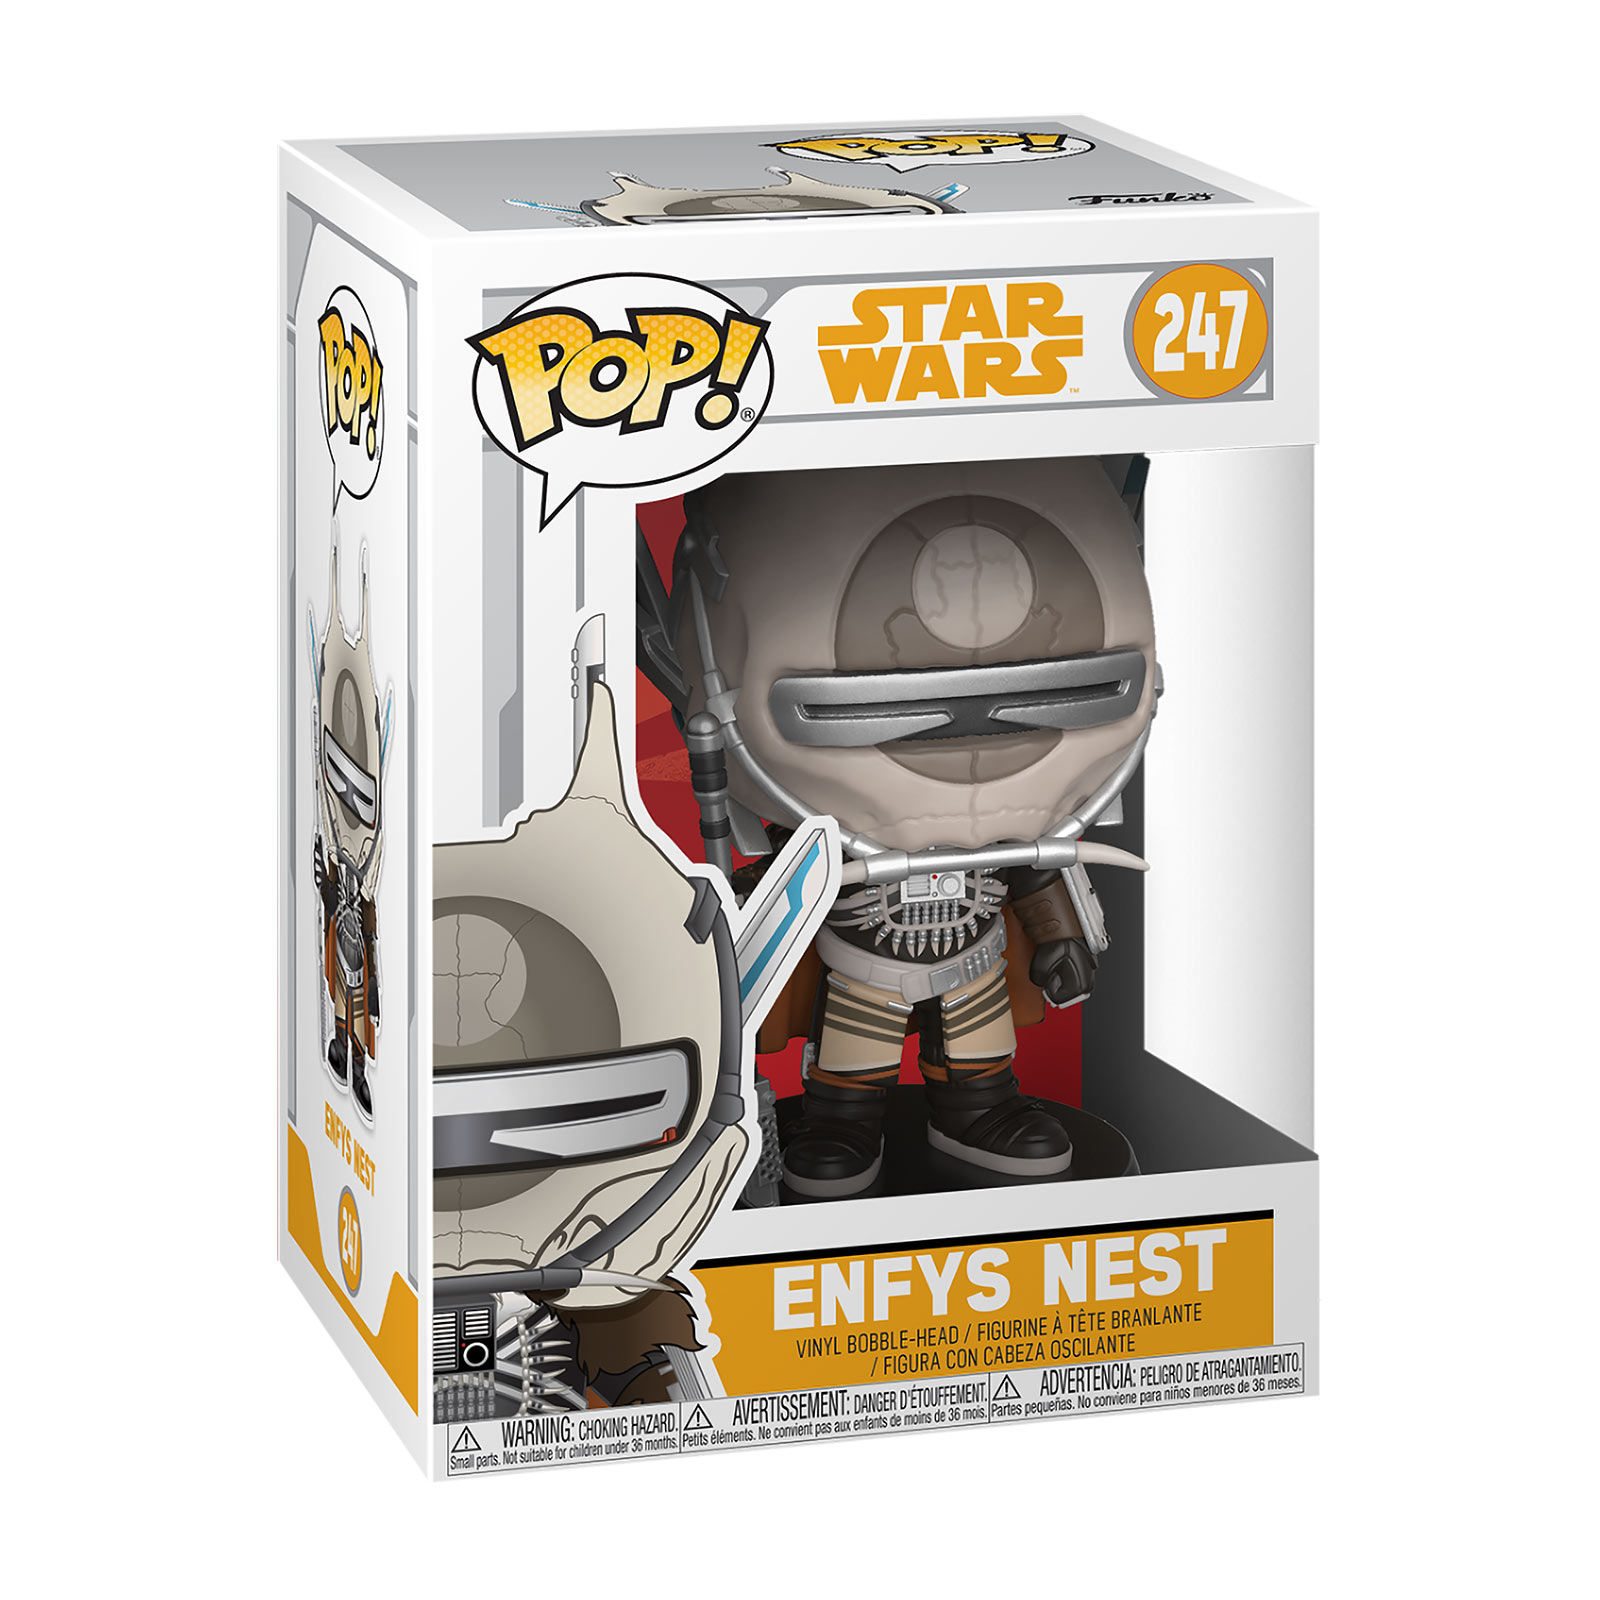 Star Wars - Enfys Nest Funko Pop Bobblehead Figure